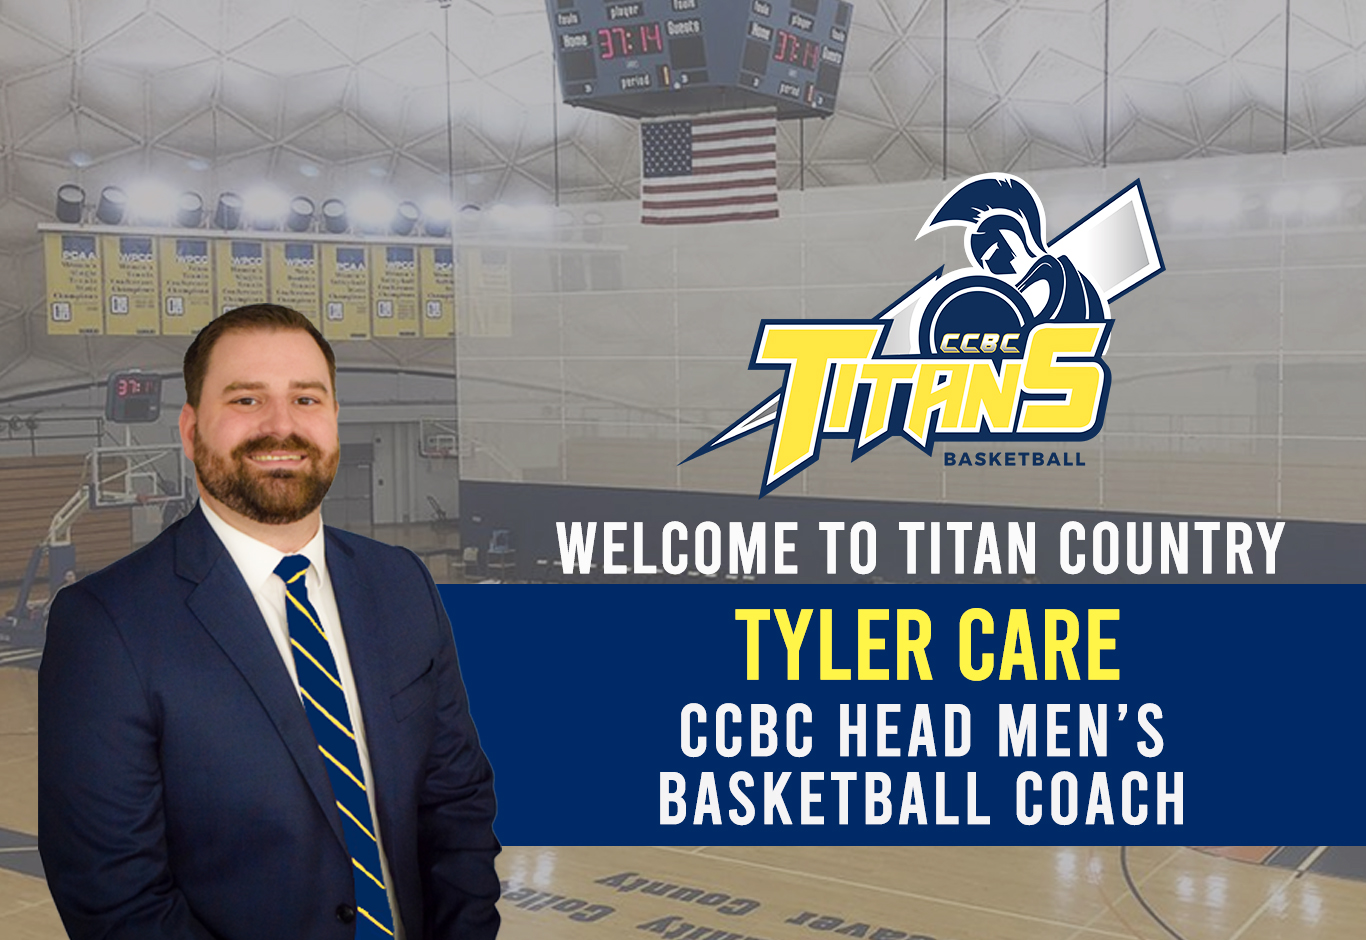 CCBC NAMES TYLER CARE AS MEN’S BASKETBALL HEAD COACH